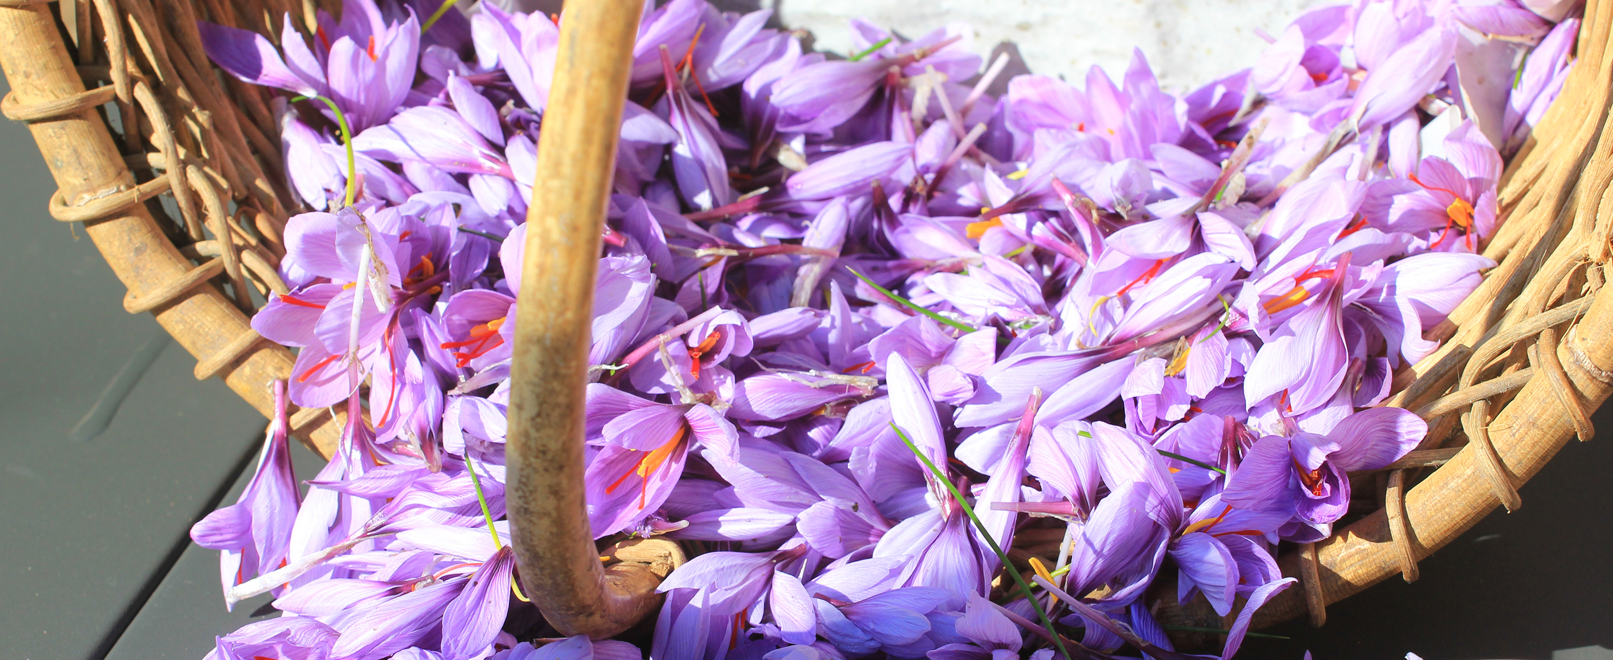 Fleurs de safran dans un panier © Hocquel